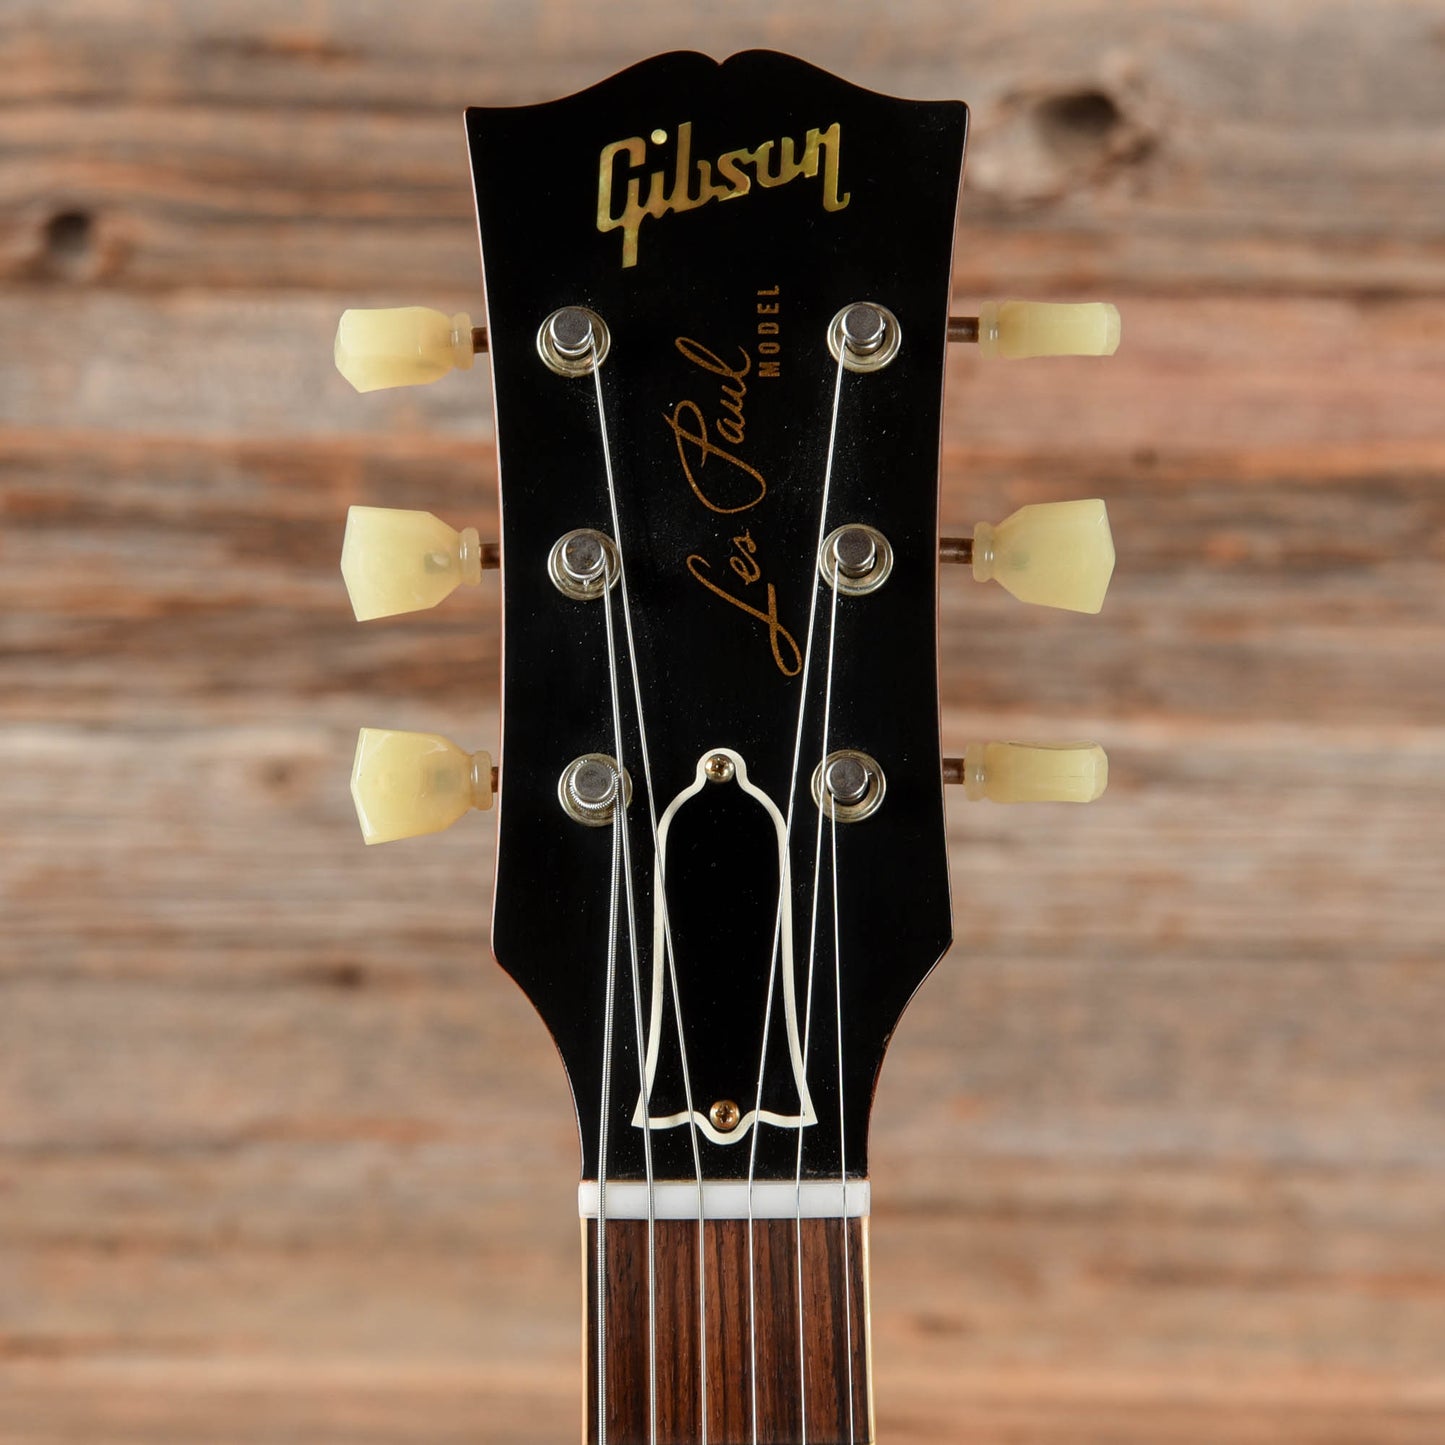 Gibson Custom Historic '59 Les Paul Standard Reissue Sunburst 2018